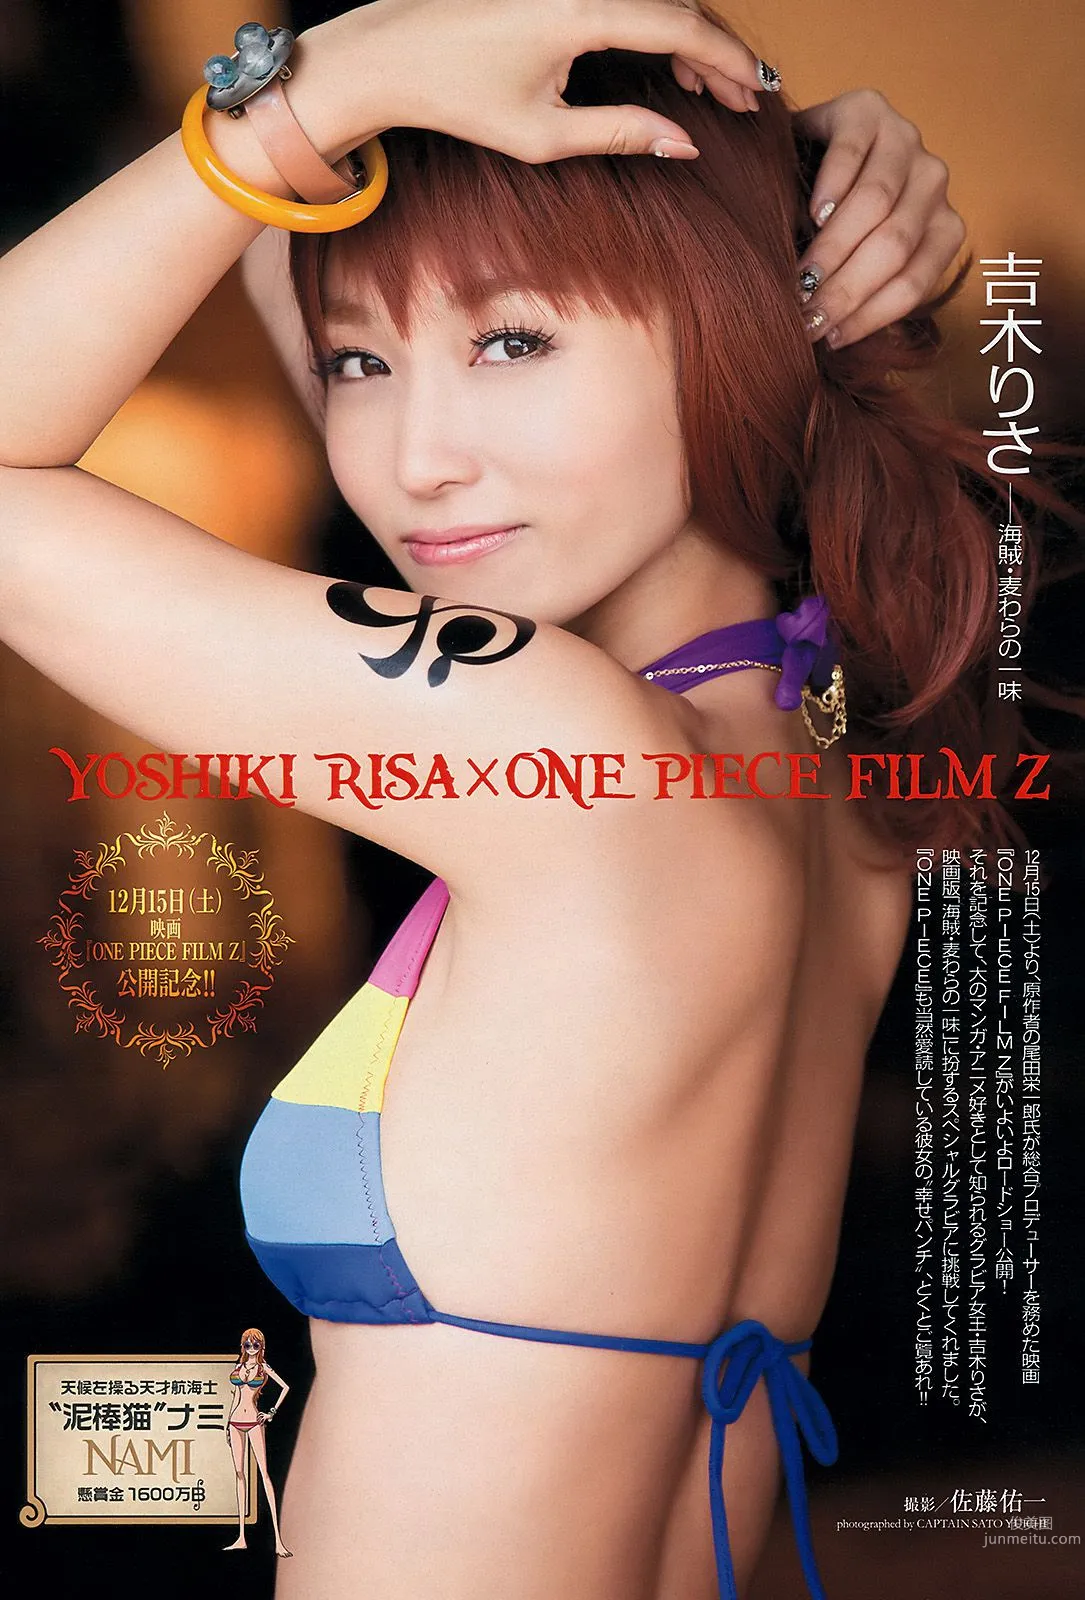 吉木りさ 紗綾 杉原杏璃 鈴木ふみ奈 原幹恵 SKE48 [Weekly Playboy] 2012年No.52 写真杂志2